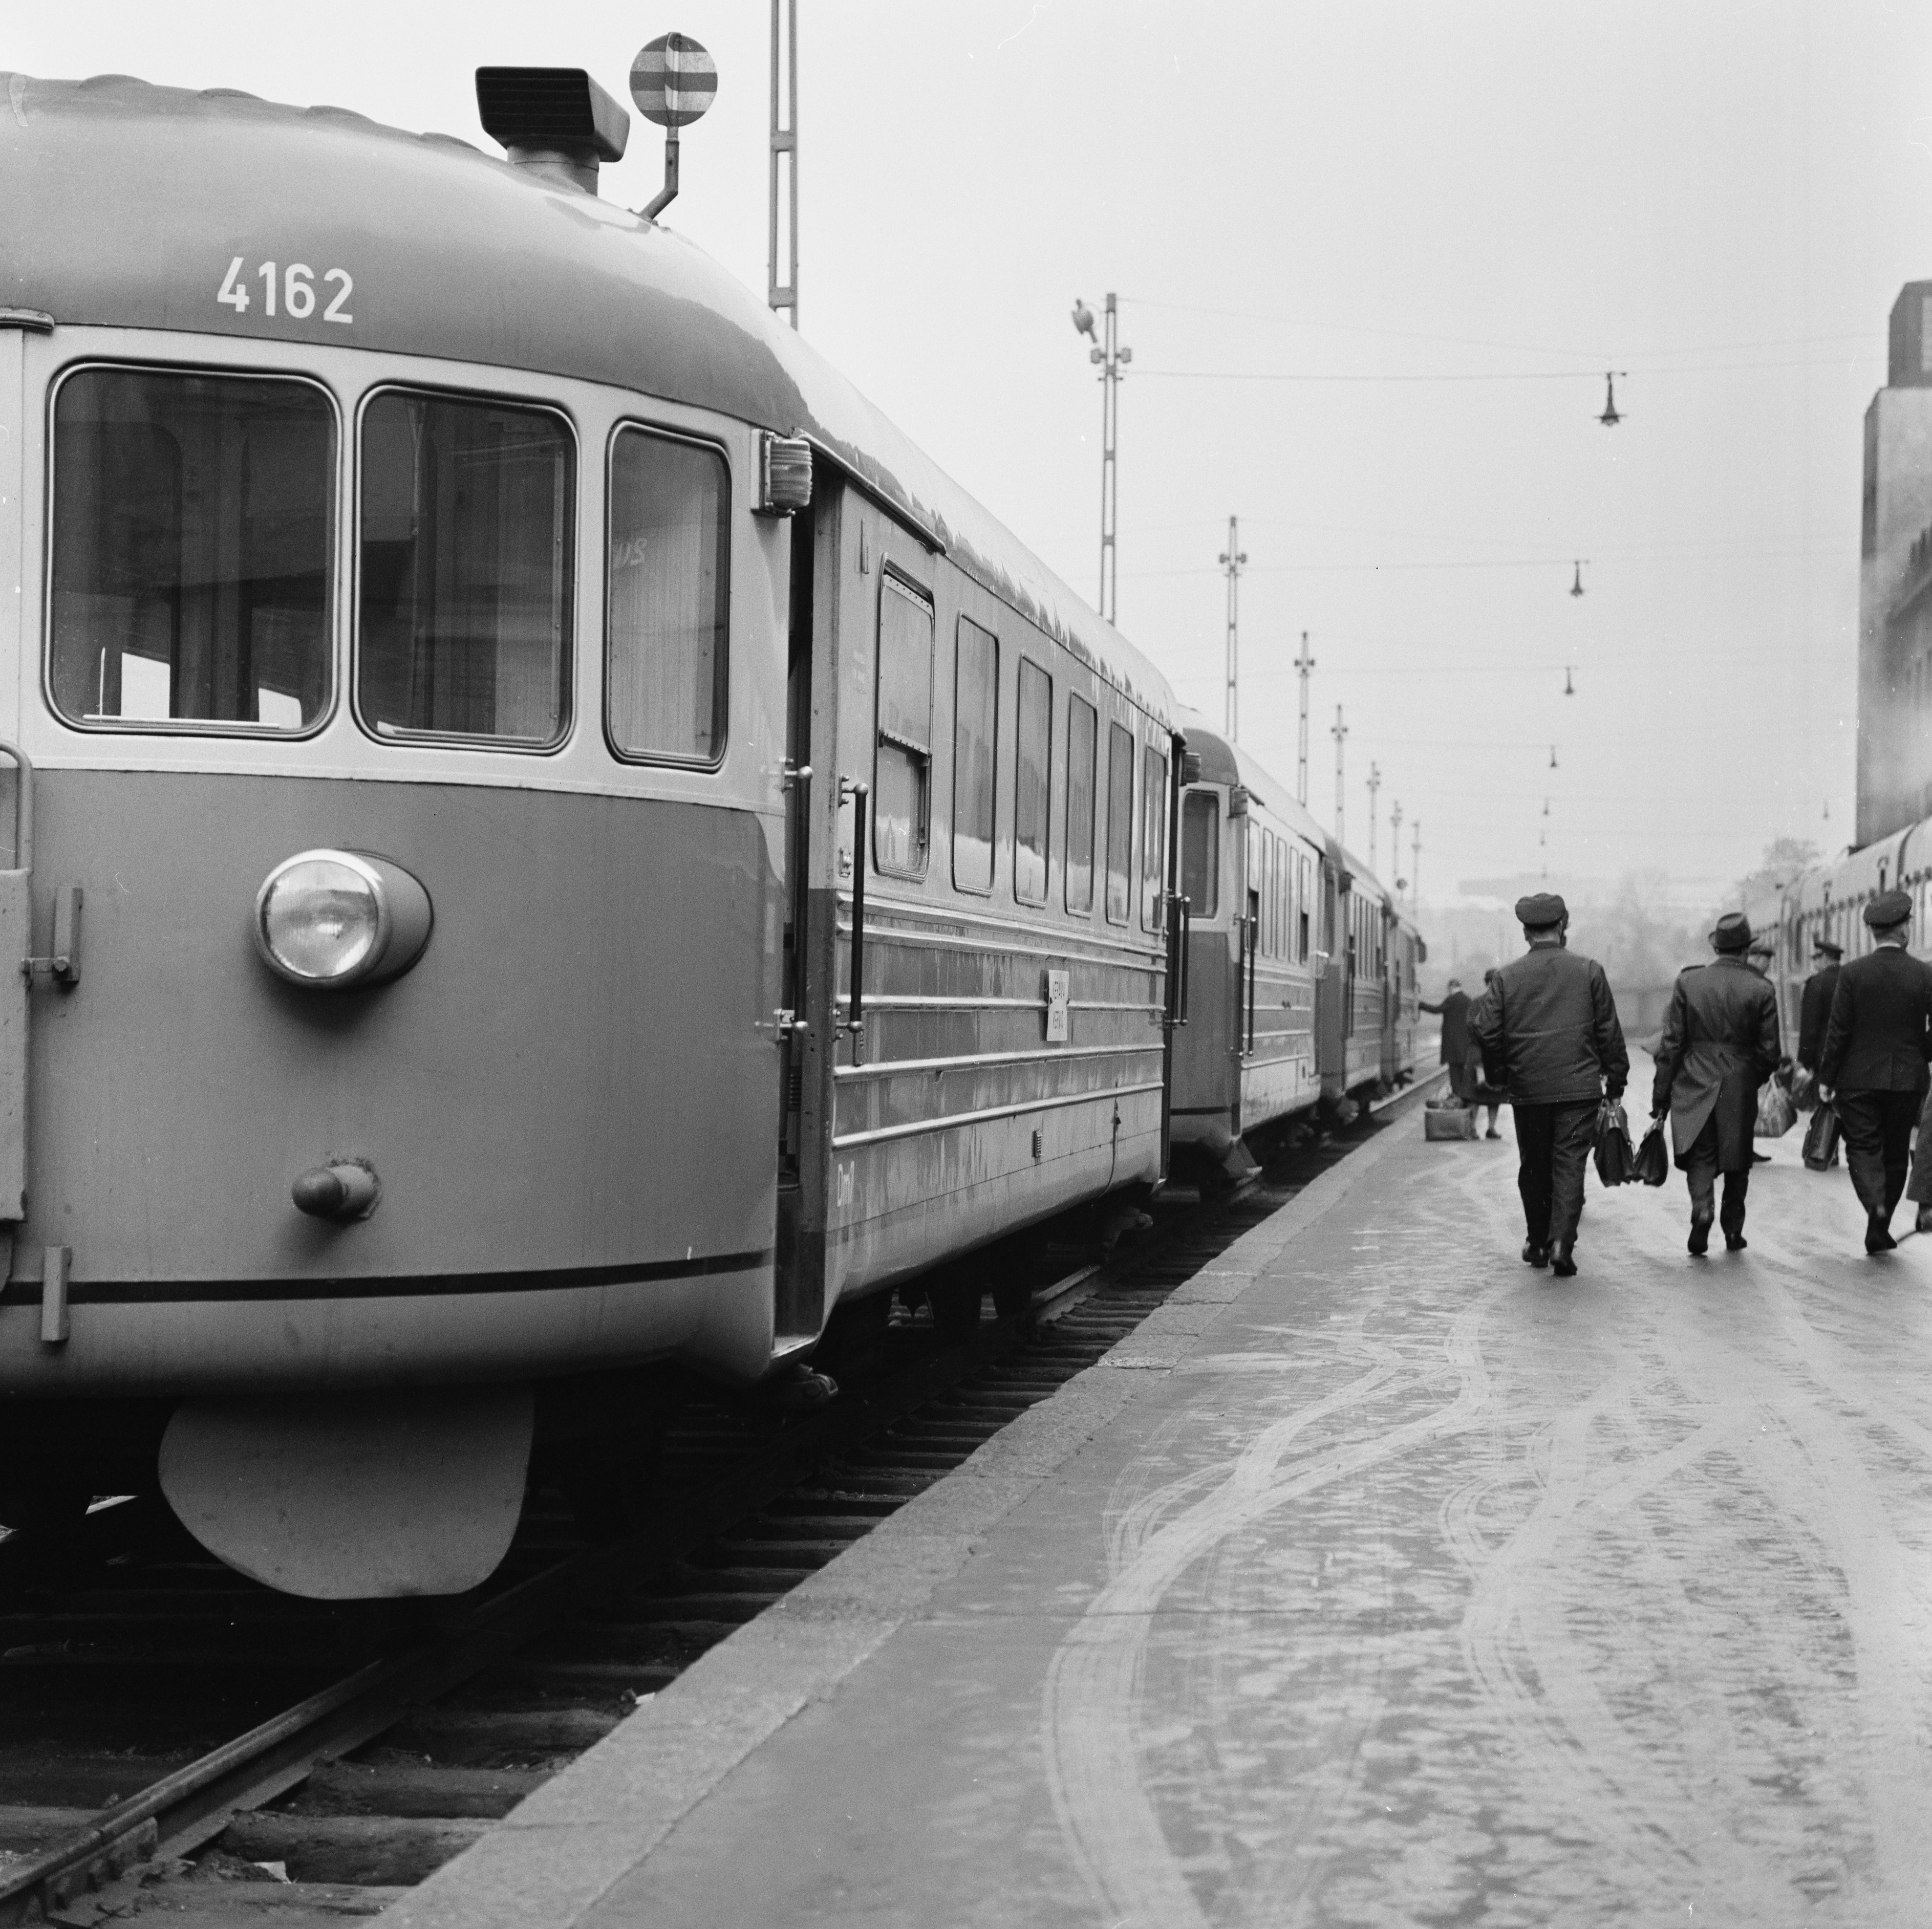 Kiskobussi eli lättähattu Helsingin rautatieasemalla.